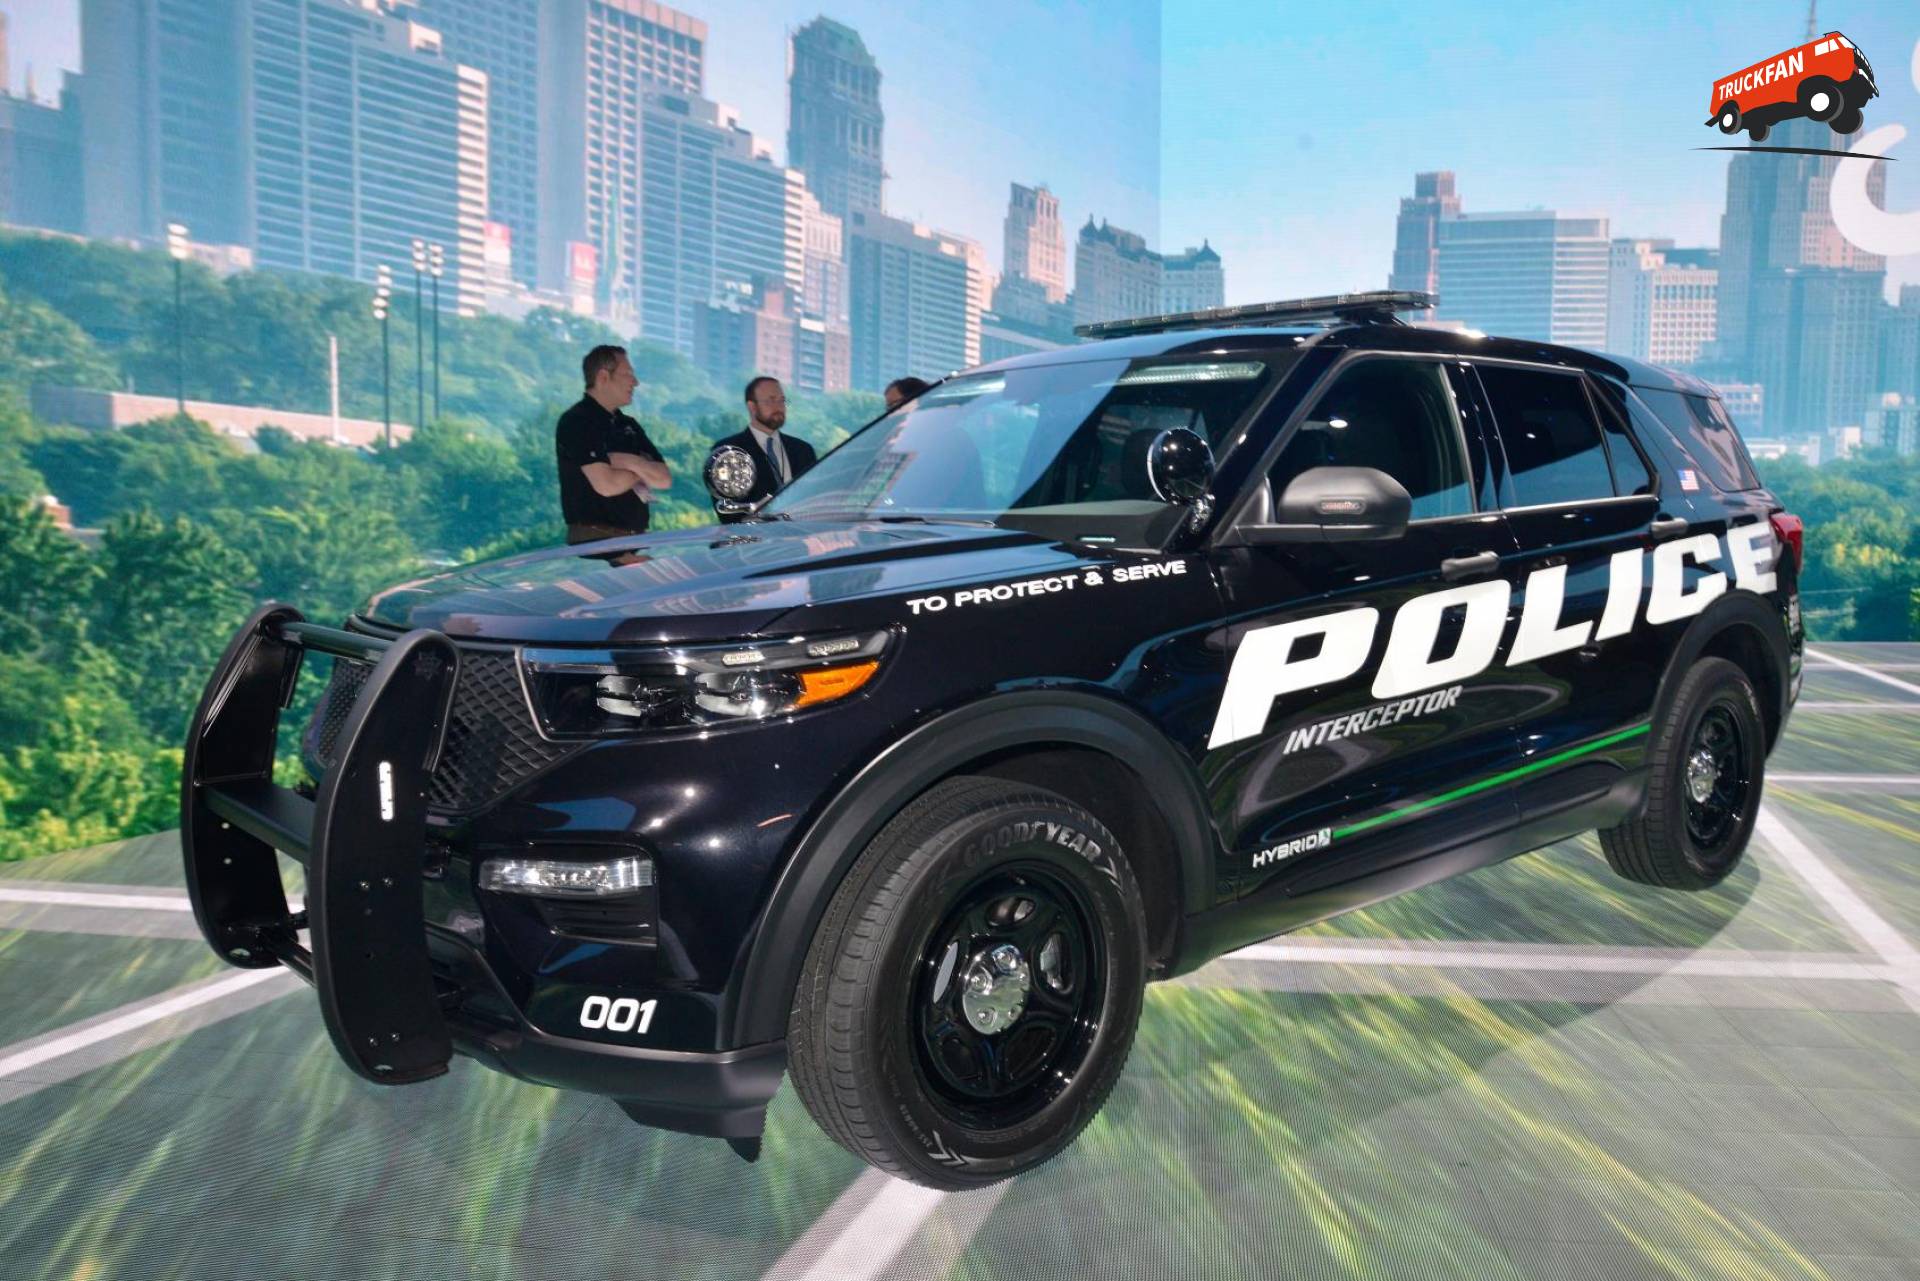 Persoto van een Ford Explorer, opgebouwd als politiewagen. 